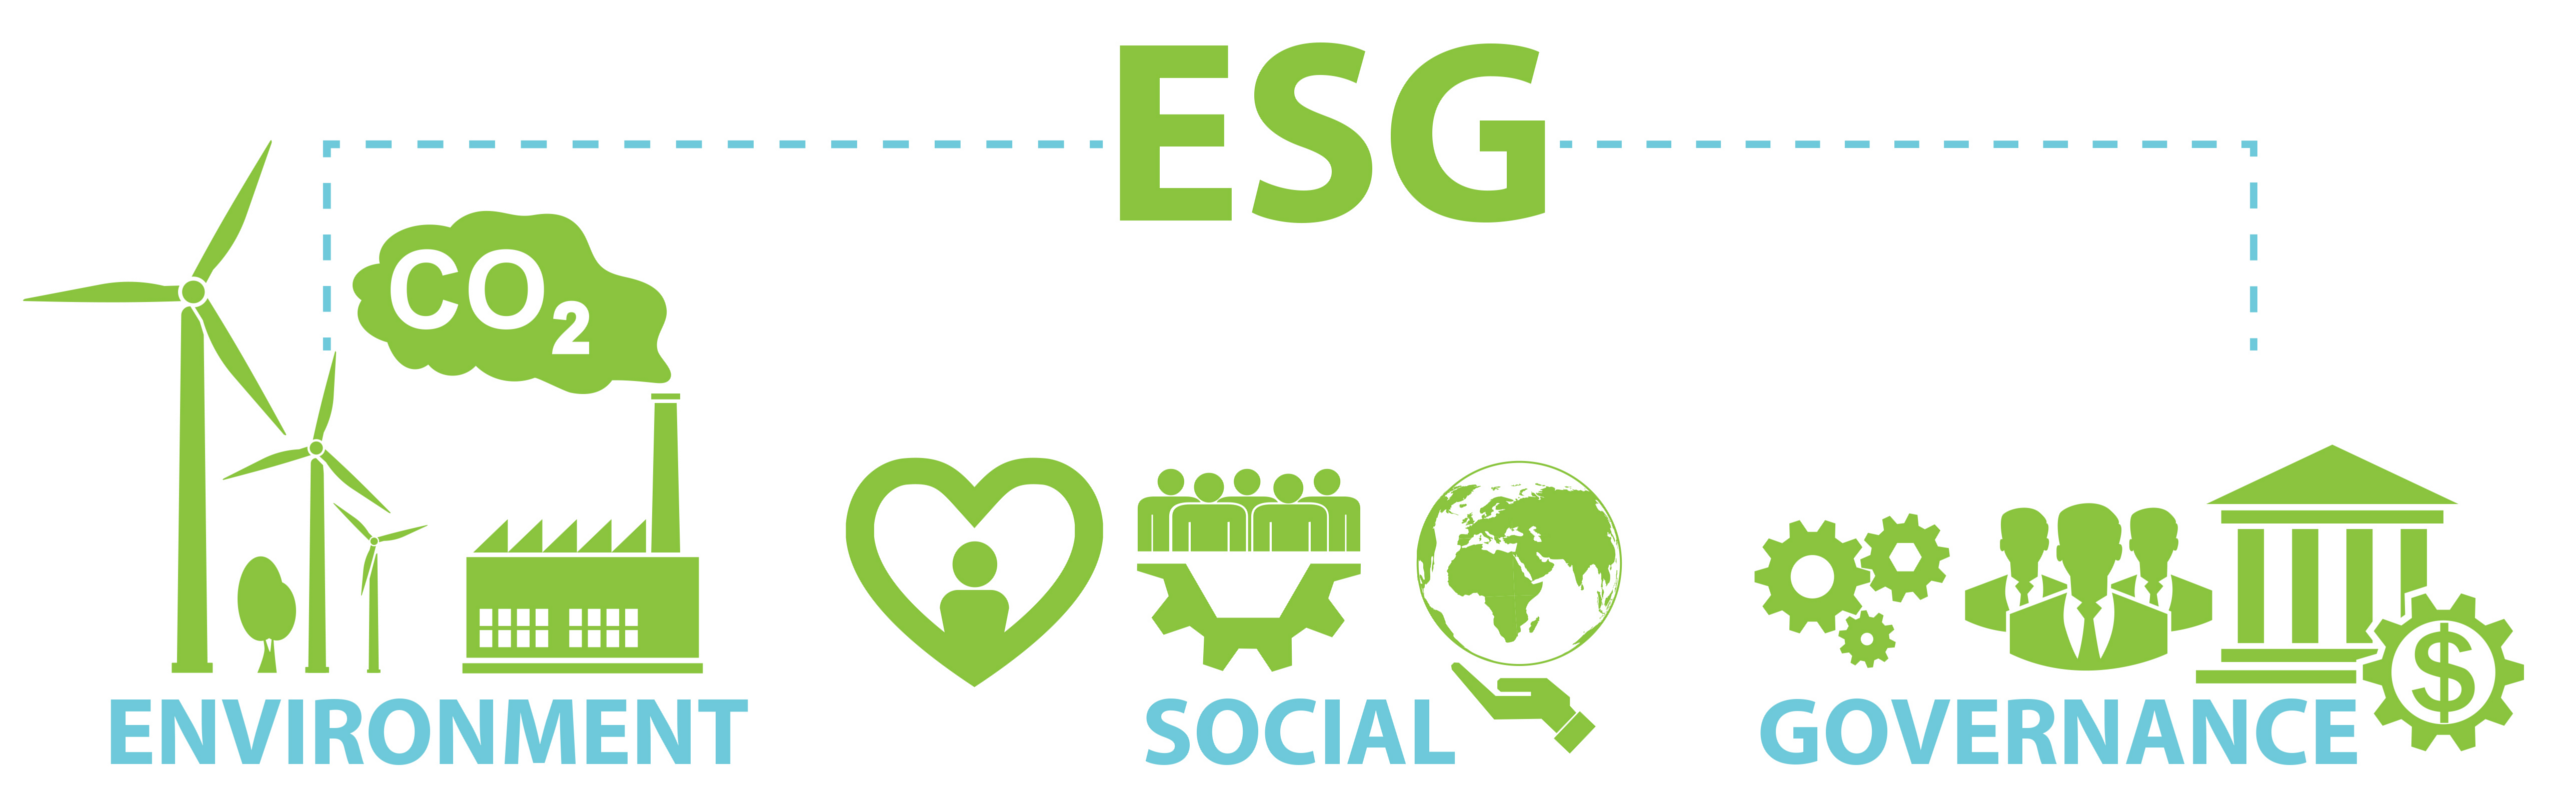 Esg отчетность. ESG проекты. ESG значок. ESG концепция. ESG экология.